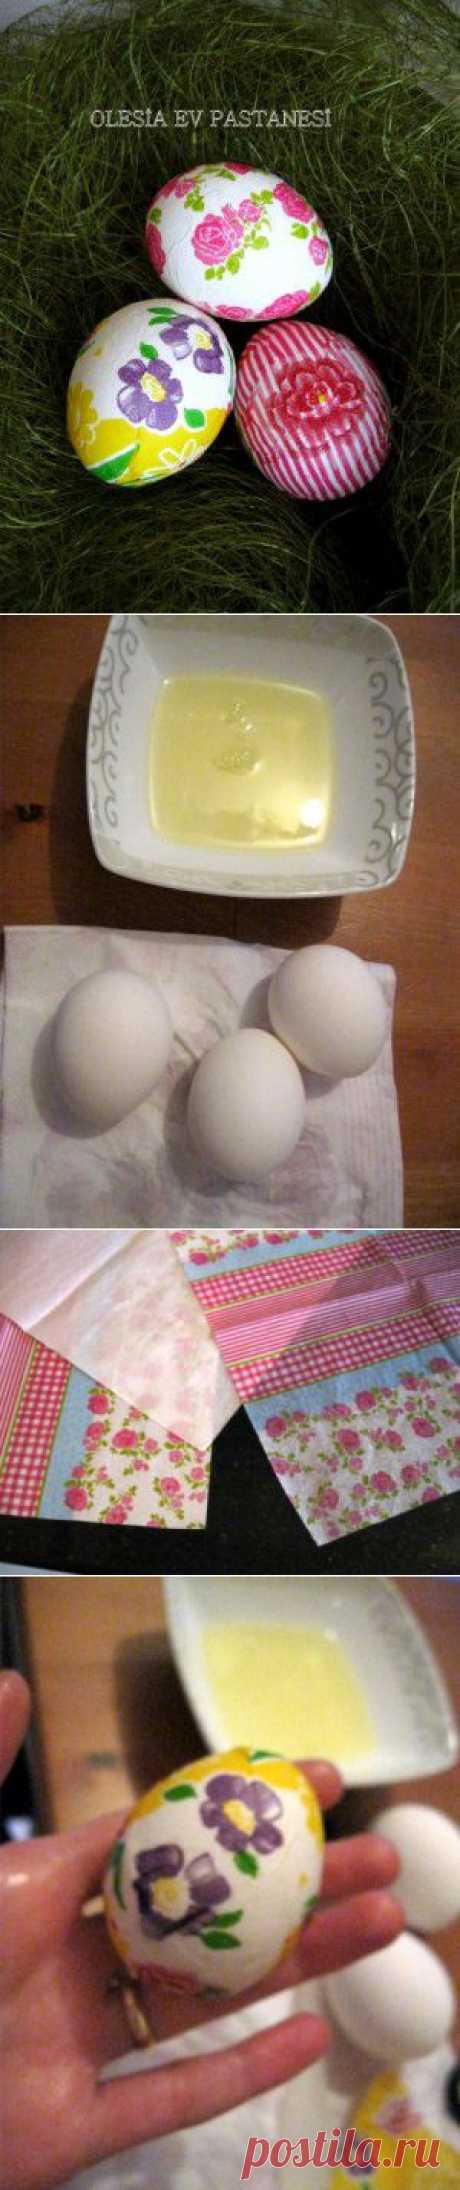 Пасхальные яйца в технике декупаж. : Куличи, пасхи